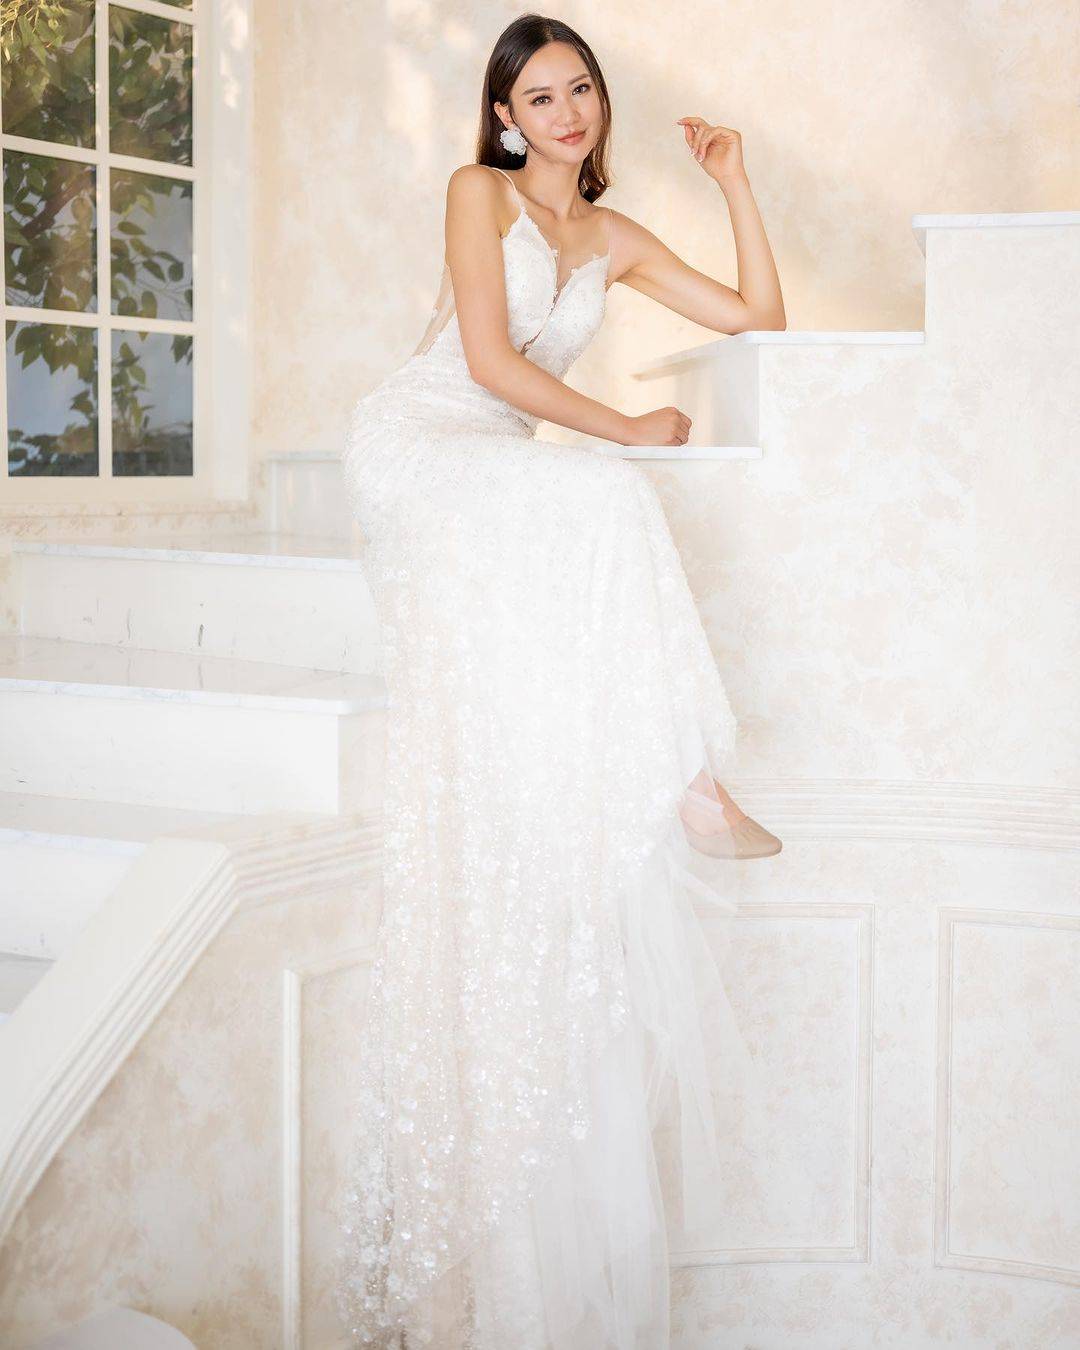 麦诗敏 睇真啲原来麦诗敏的婚纱侧边係半透视薄纱设计。